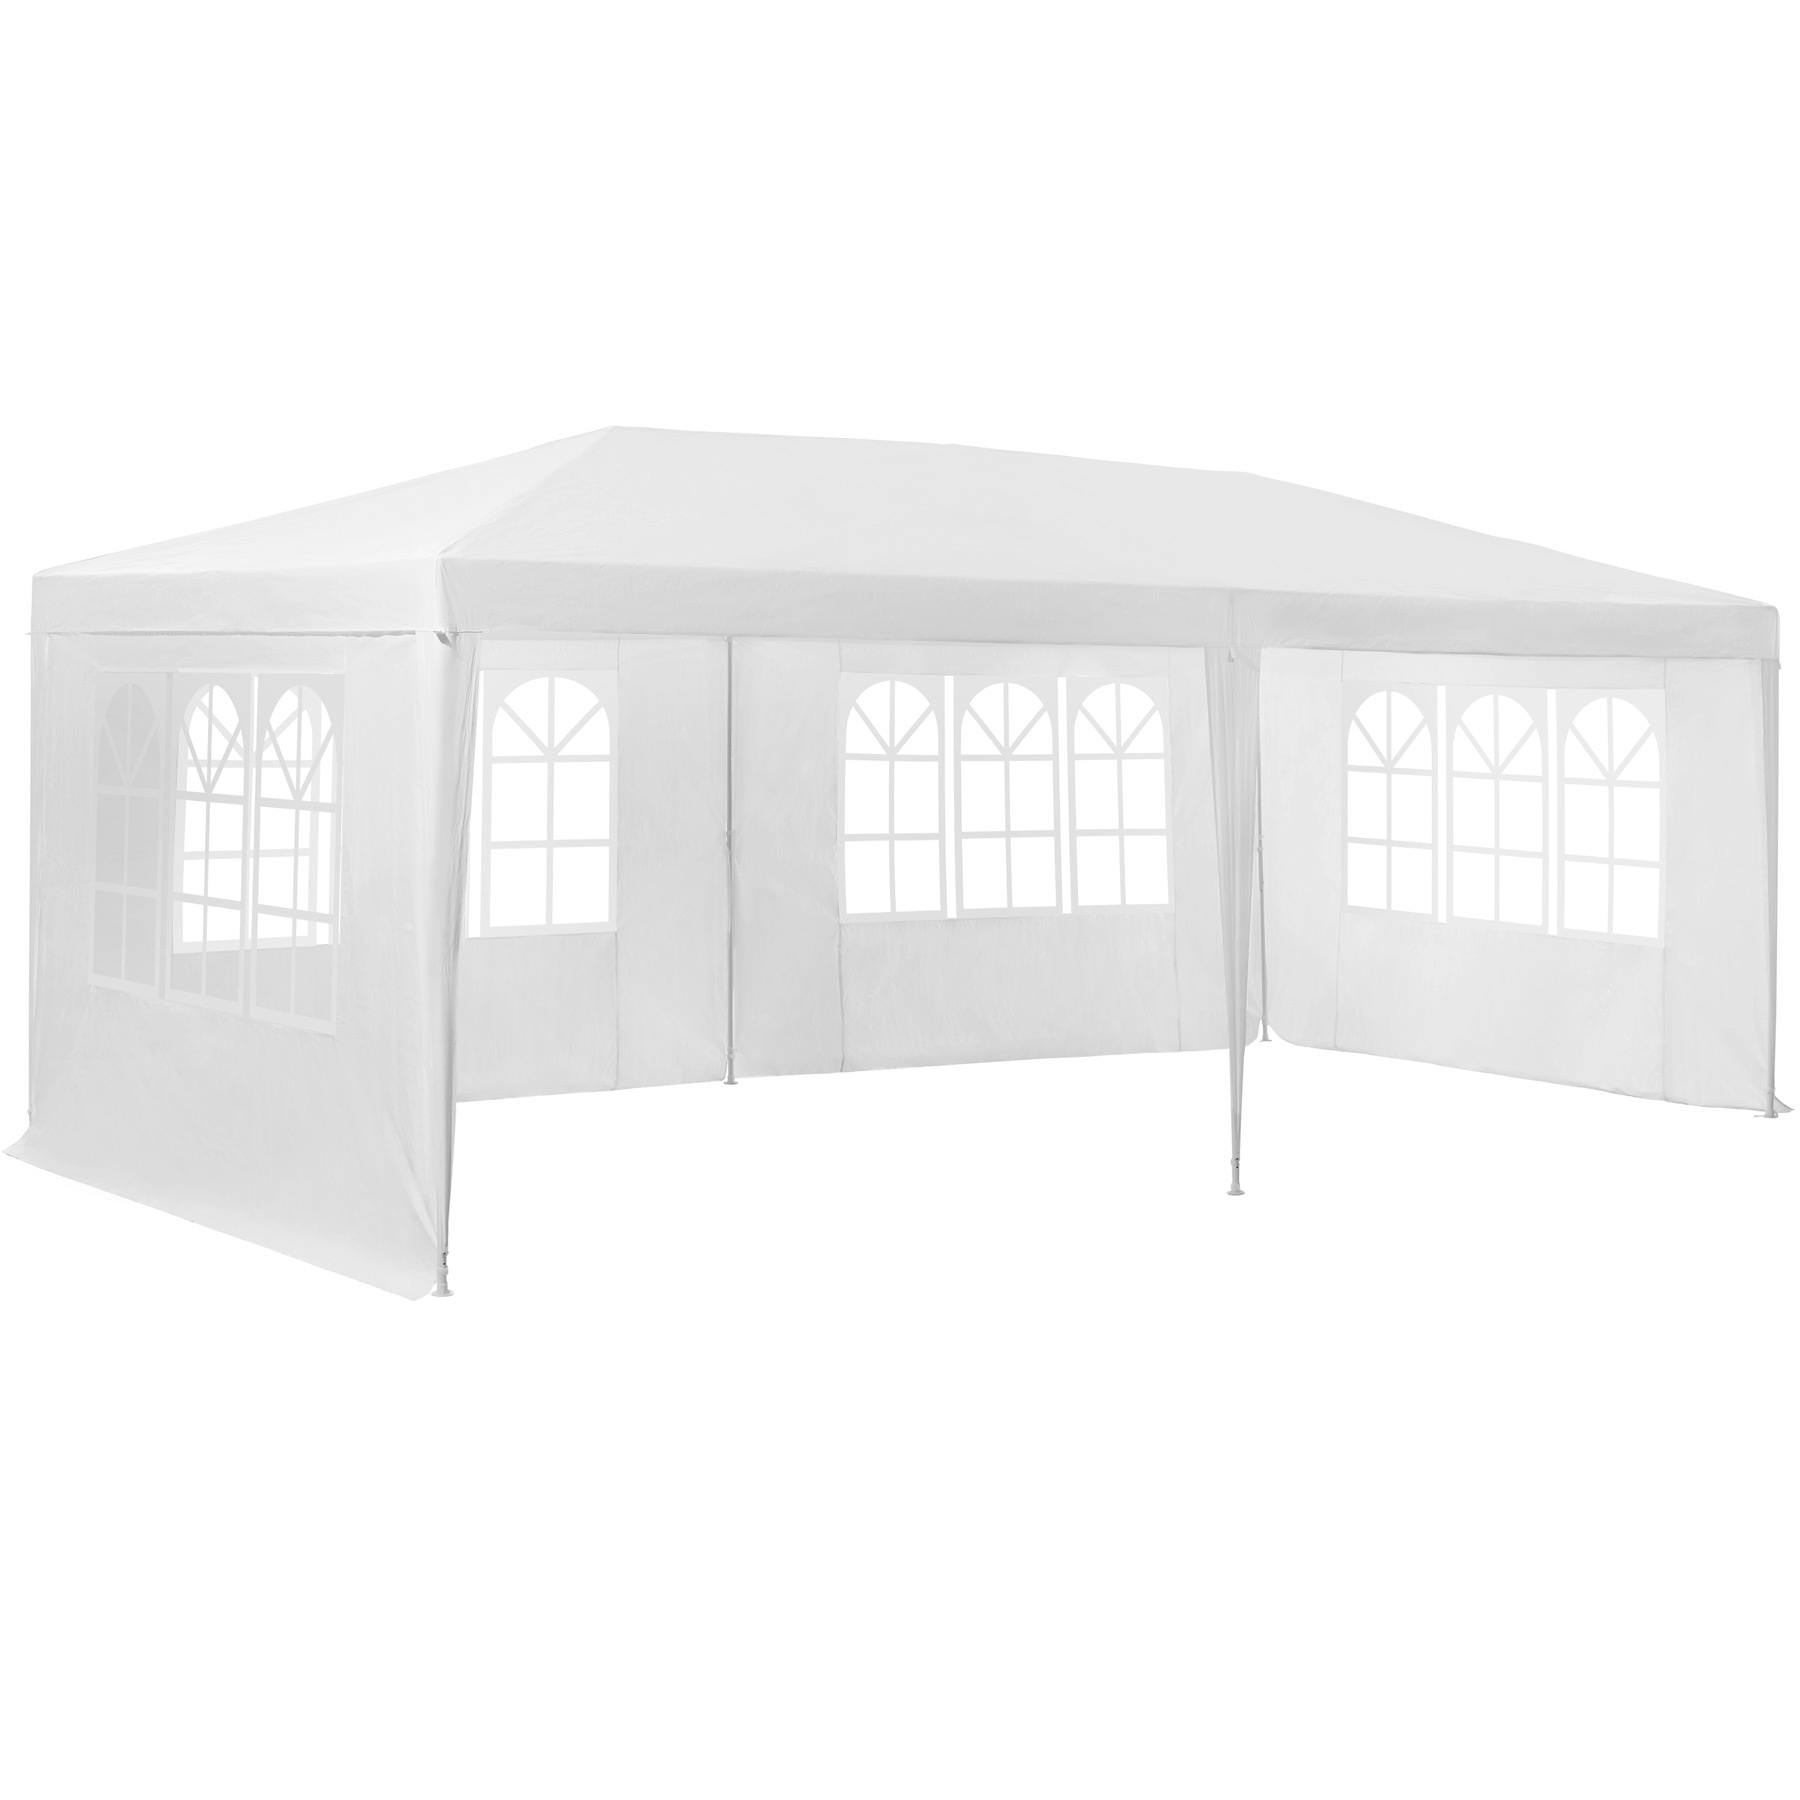 Monet Kosten voorbeeld tectake paviljoen 6x3m met 5 zijdelen - wit - 402301 | MAKRO Webshop